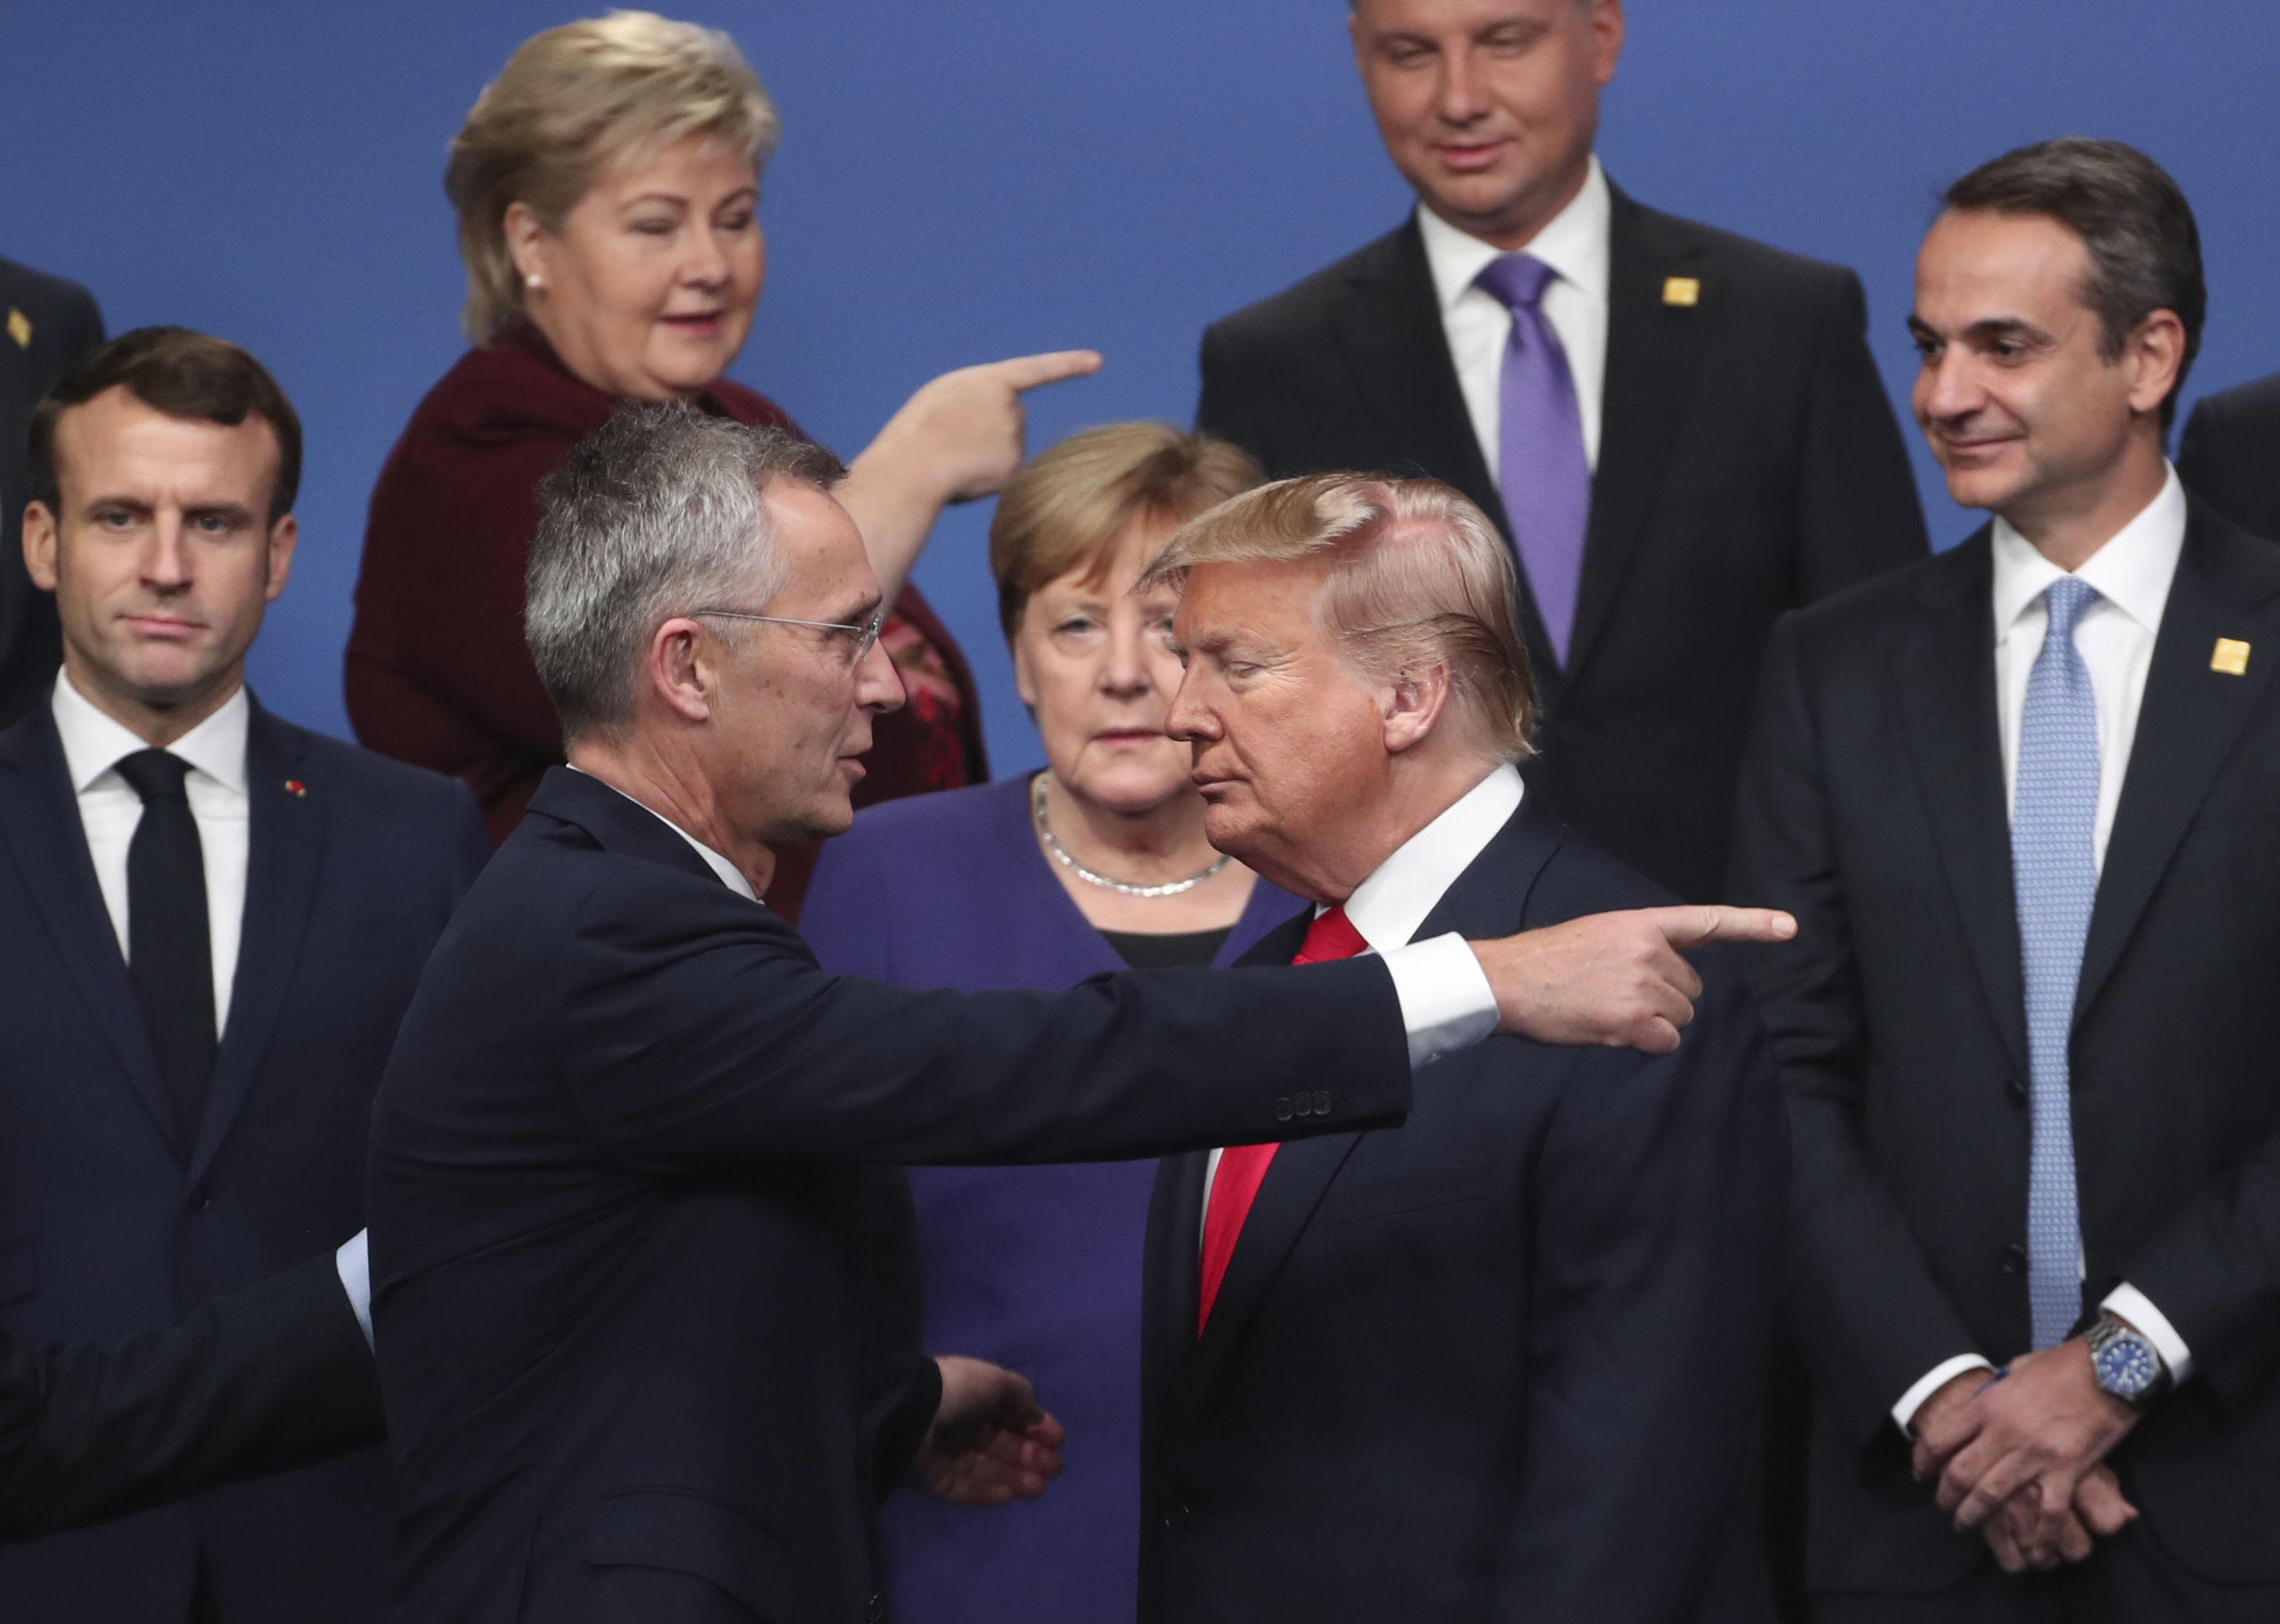 Генеральный секретарь НАТО Йенс Столтенберг (в центре на первом плане слева) беседует с президентом США Дональдом Трампом (в центре на первом плане справа)  на встрече лидеров НАТО, 4 декабря 2019 года